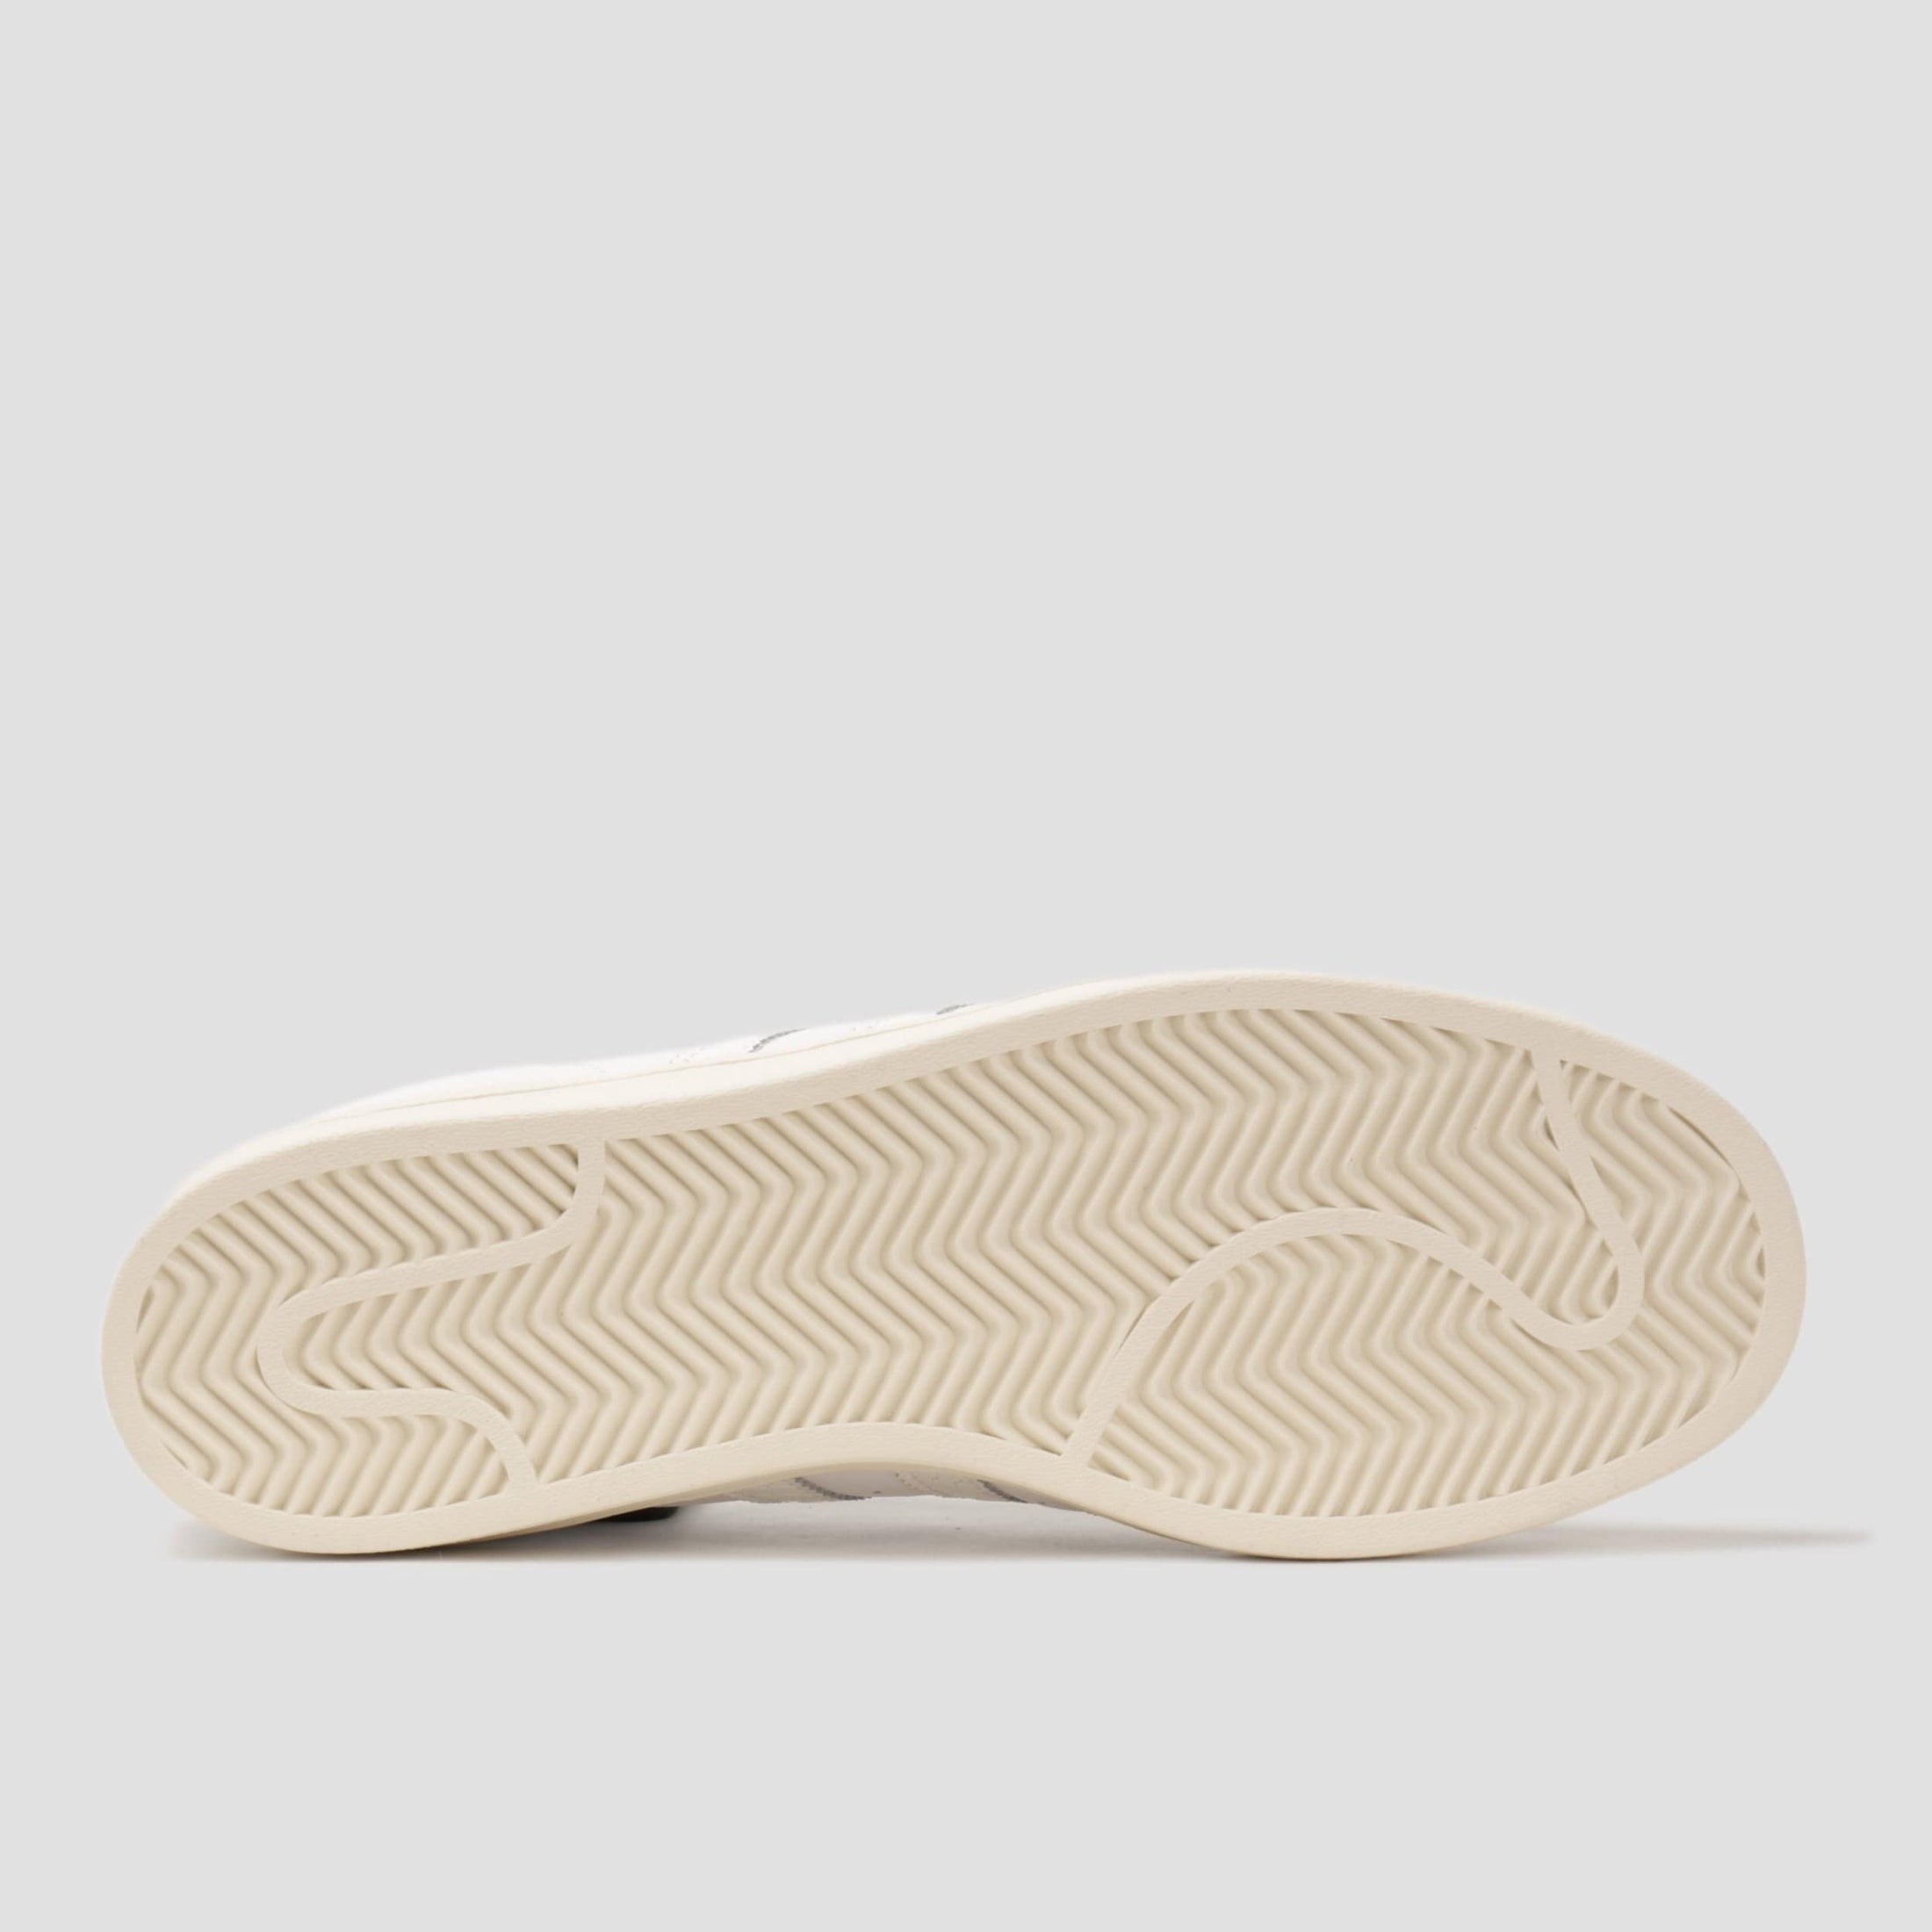 adidas Superstar Adv Skate Shoes Footwear White / Footwear White / Gold Metallic